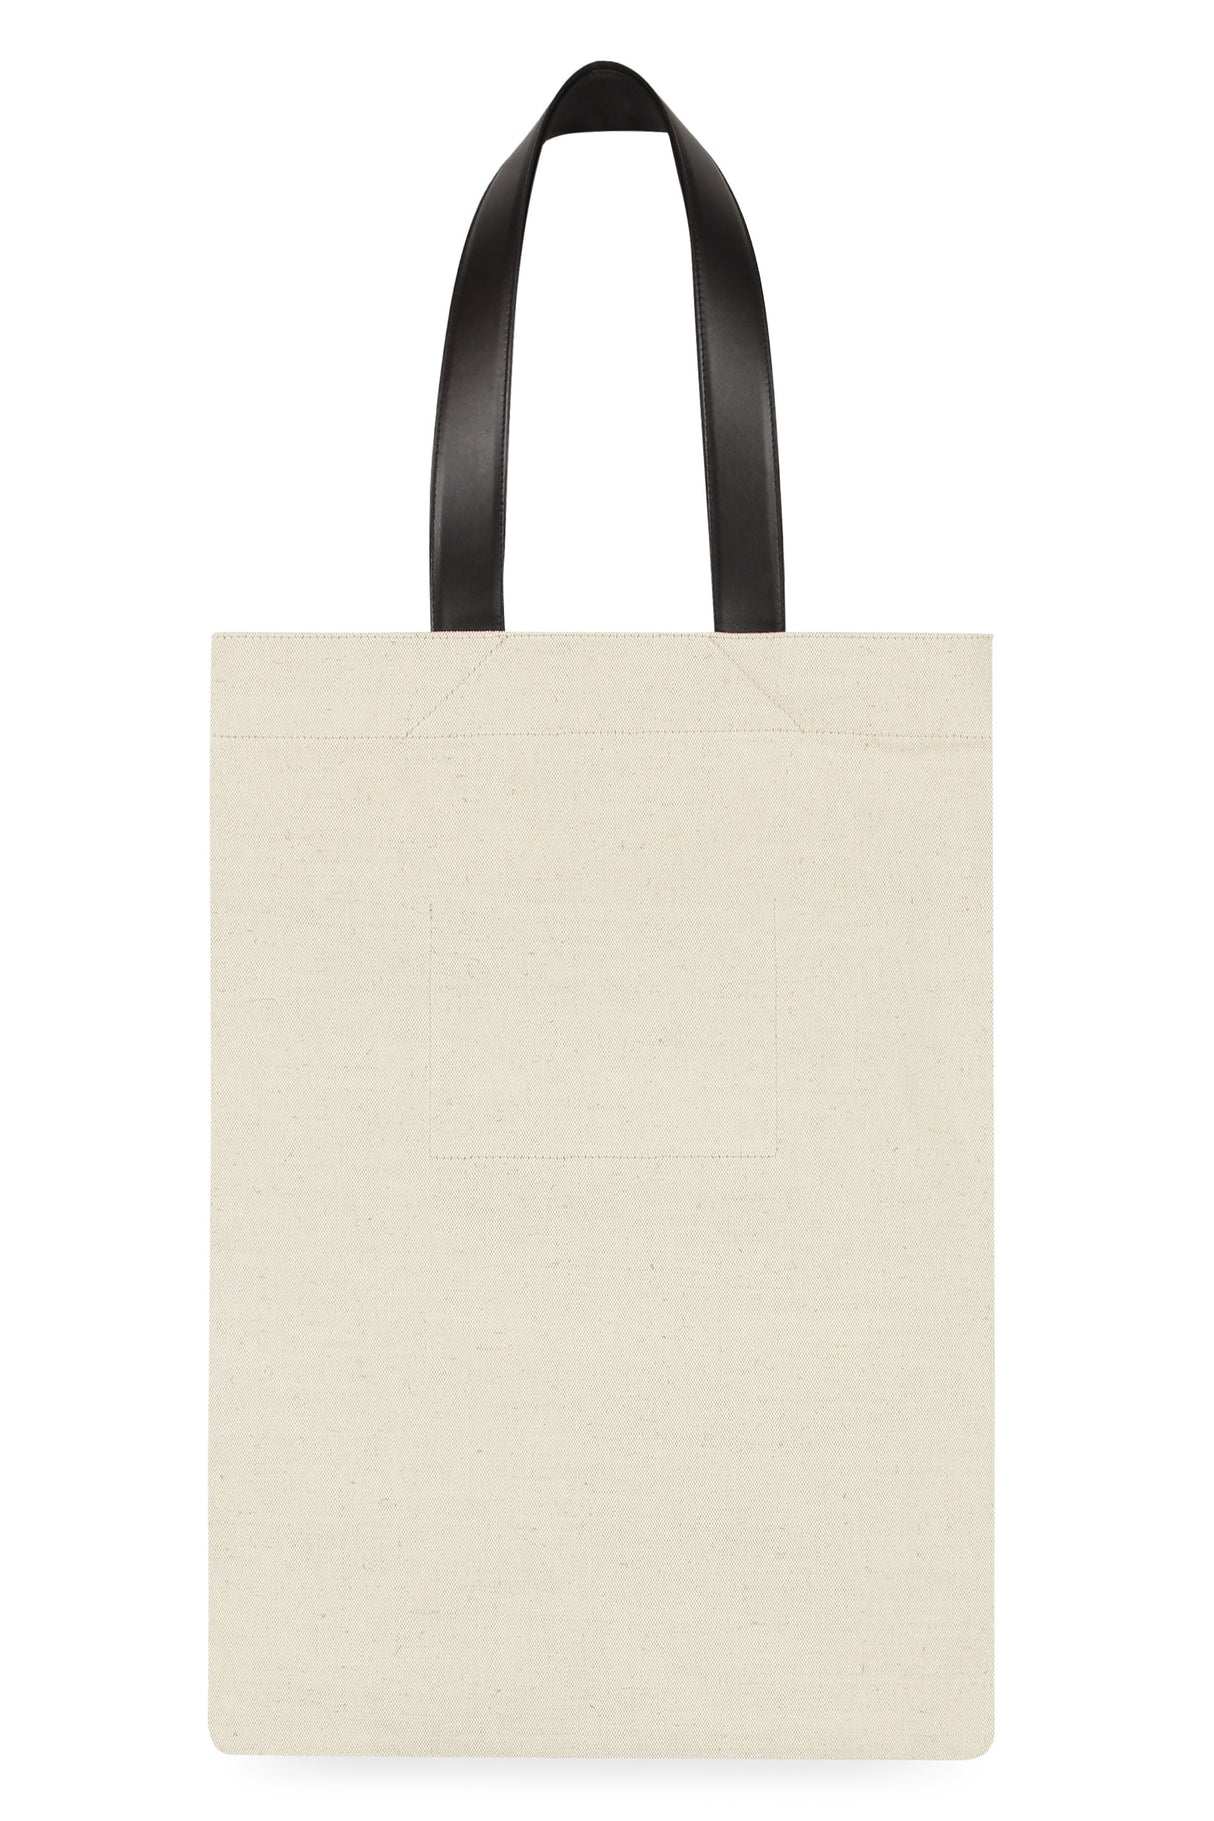 JIL SANDER Beige Tote Handbag for Men - Canvas Item with Leather Details